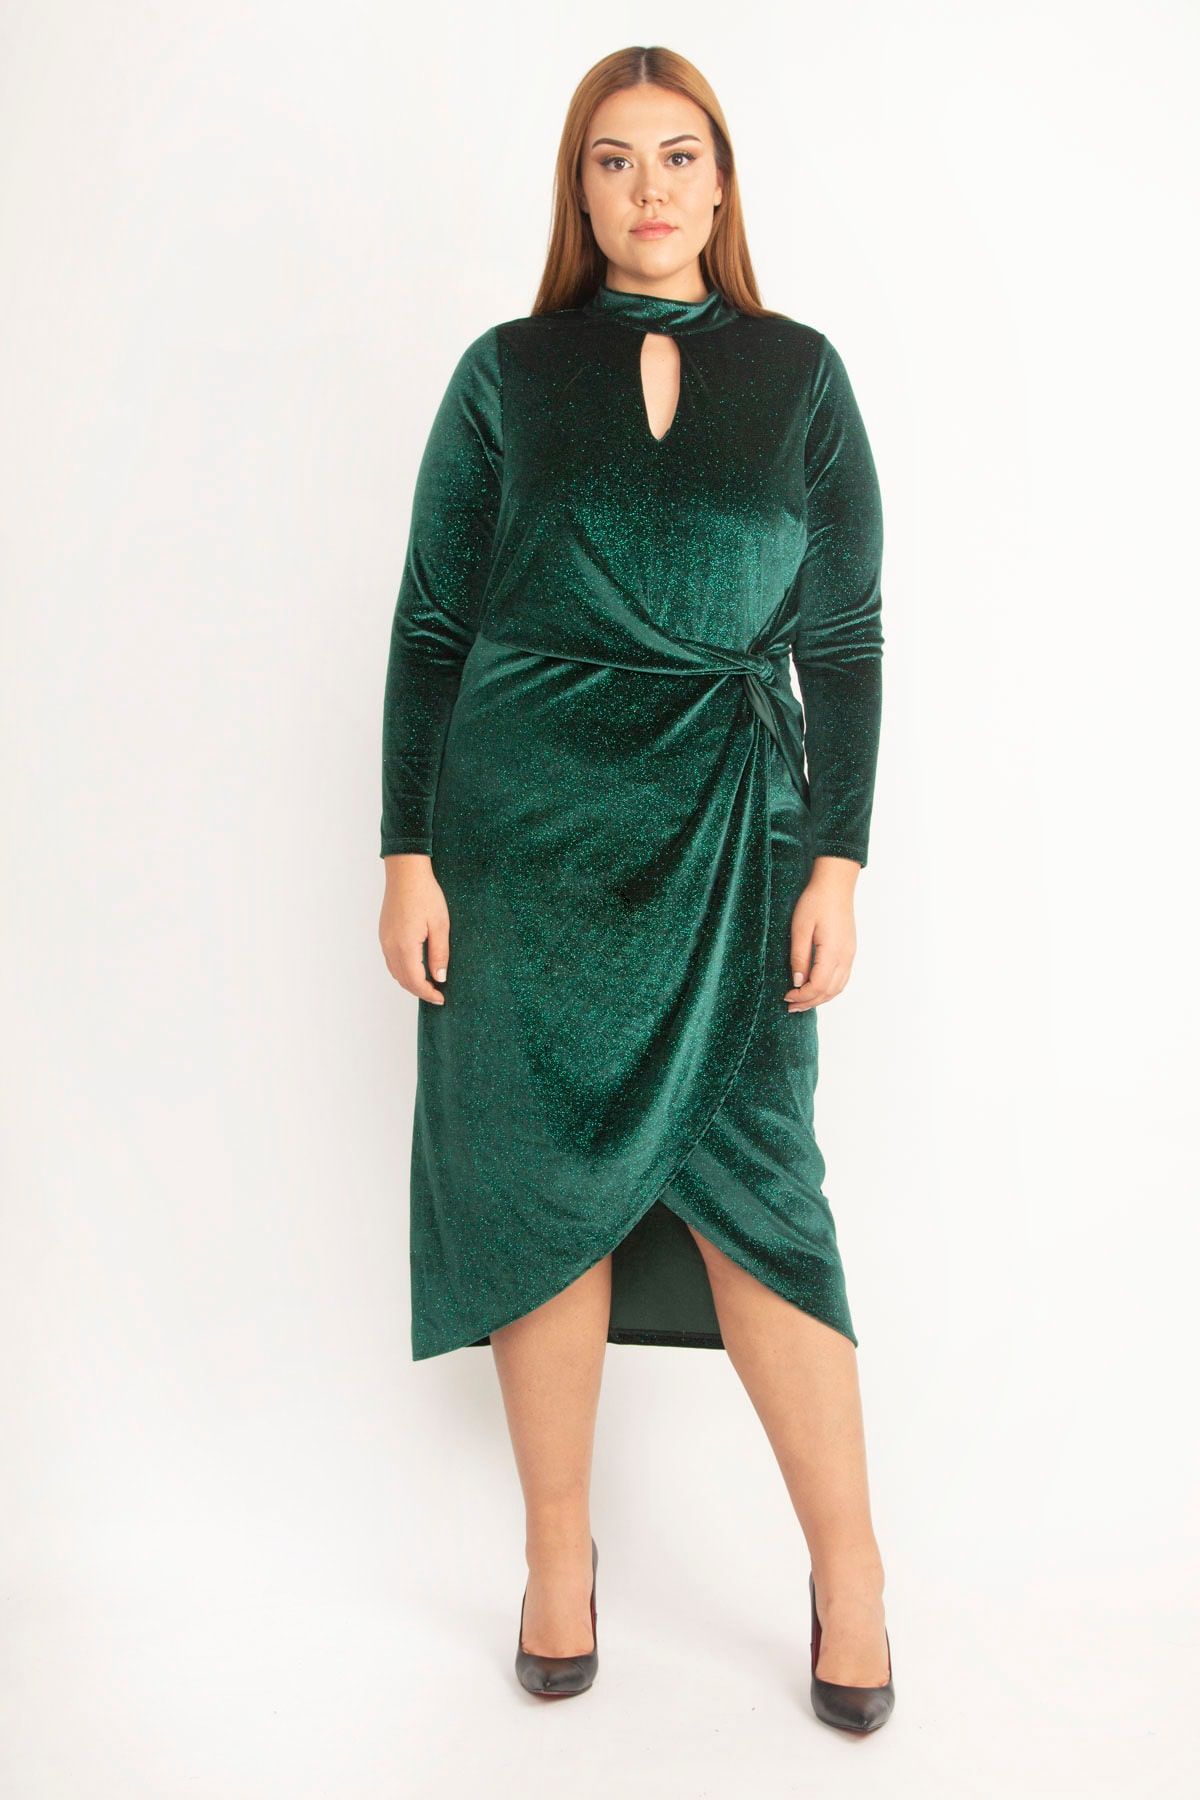 Şans Kadın Büyük Beden Yeşil Yaka Ve Ön Detaylı Etk Kısmı Anvelop Simli Inci Kadife Elbise 65n20133